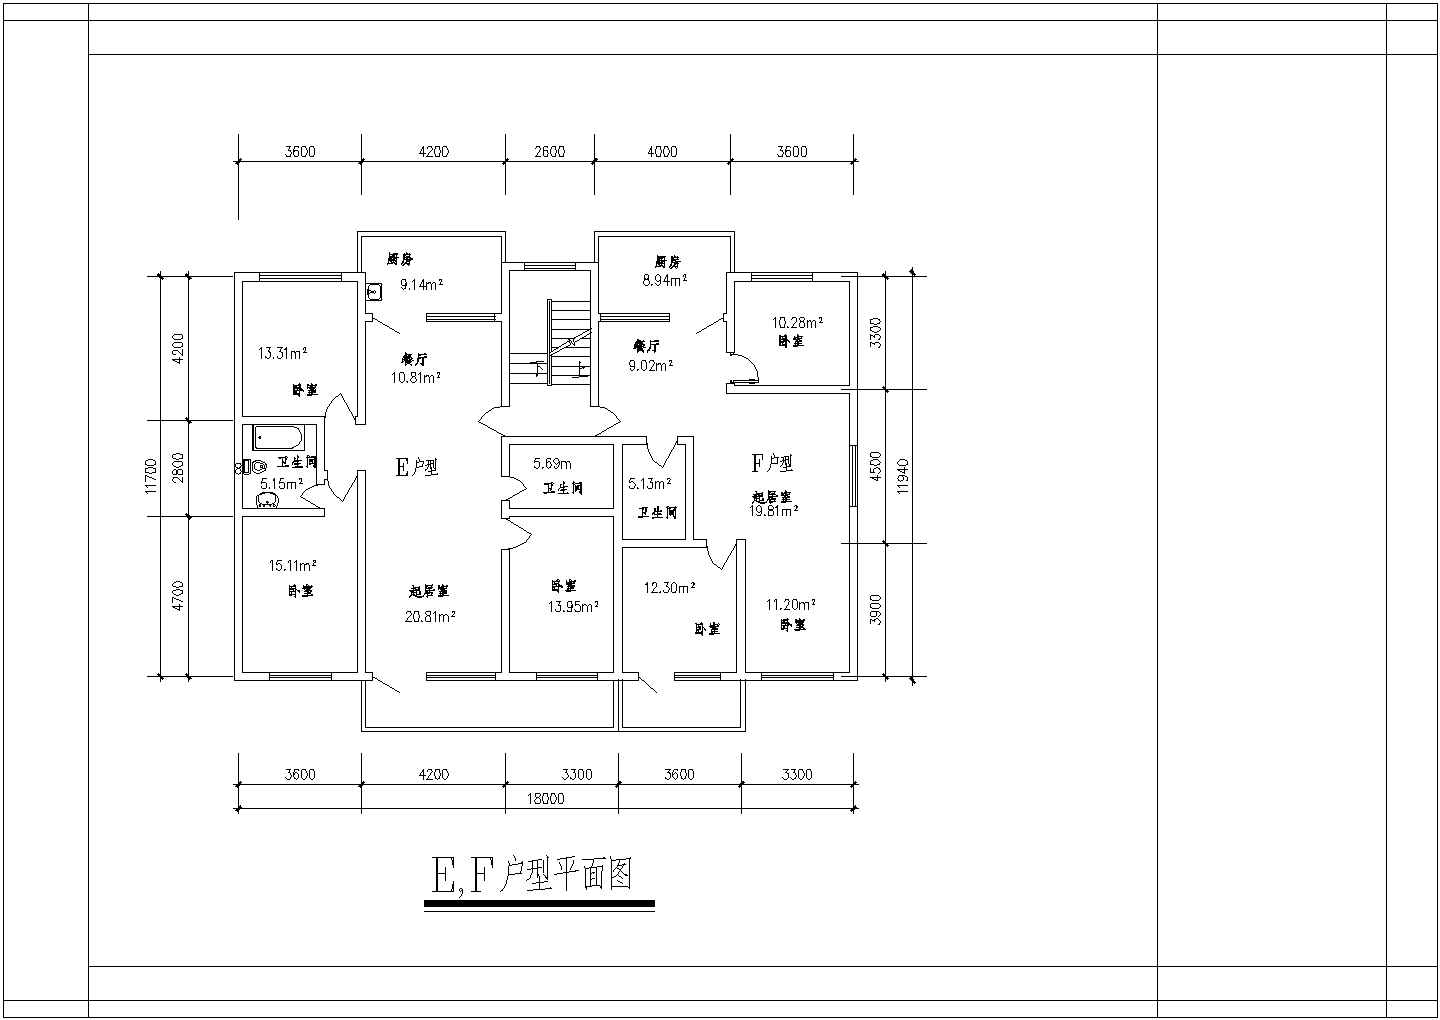 典型建筑面积120至140平米的户型住宅设计cad建筑平面方案图